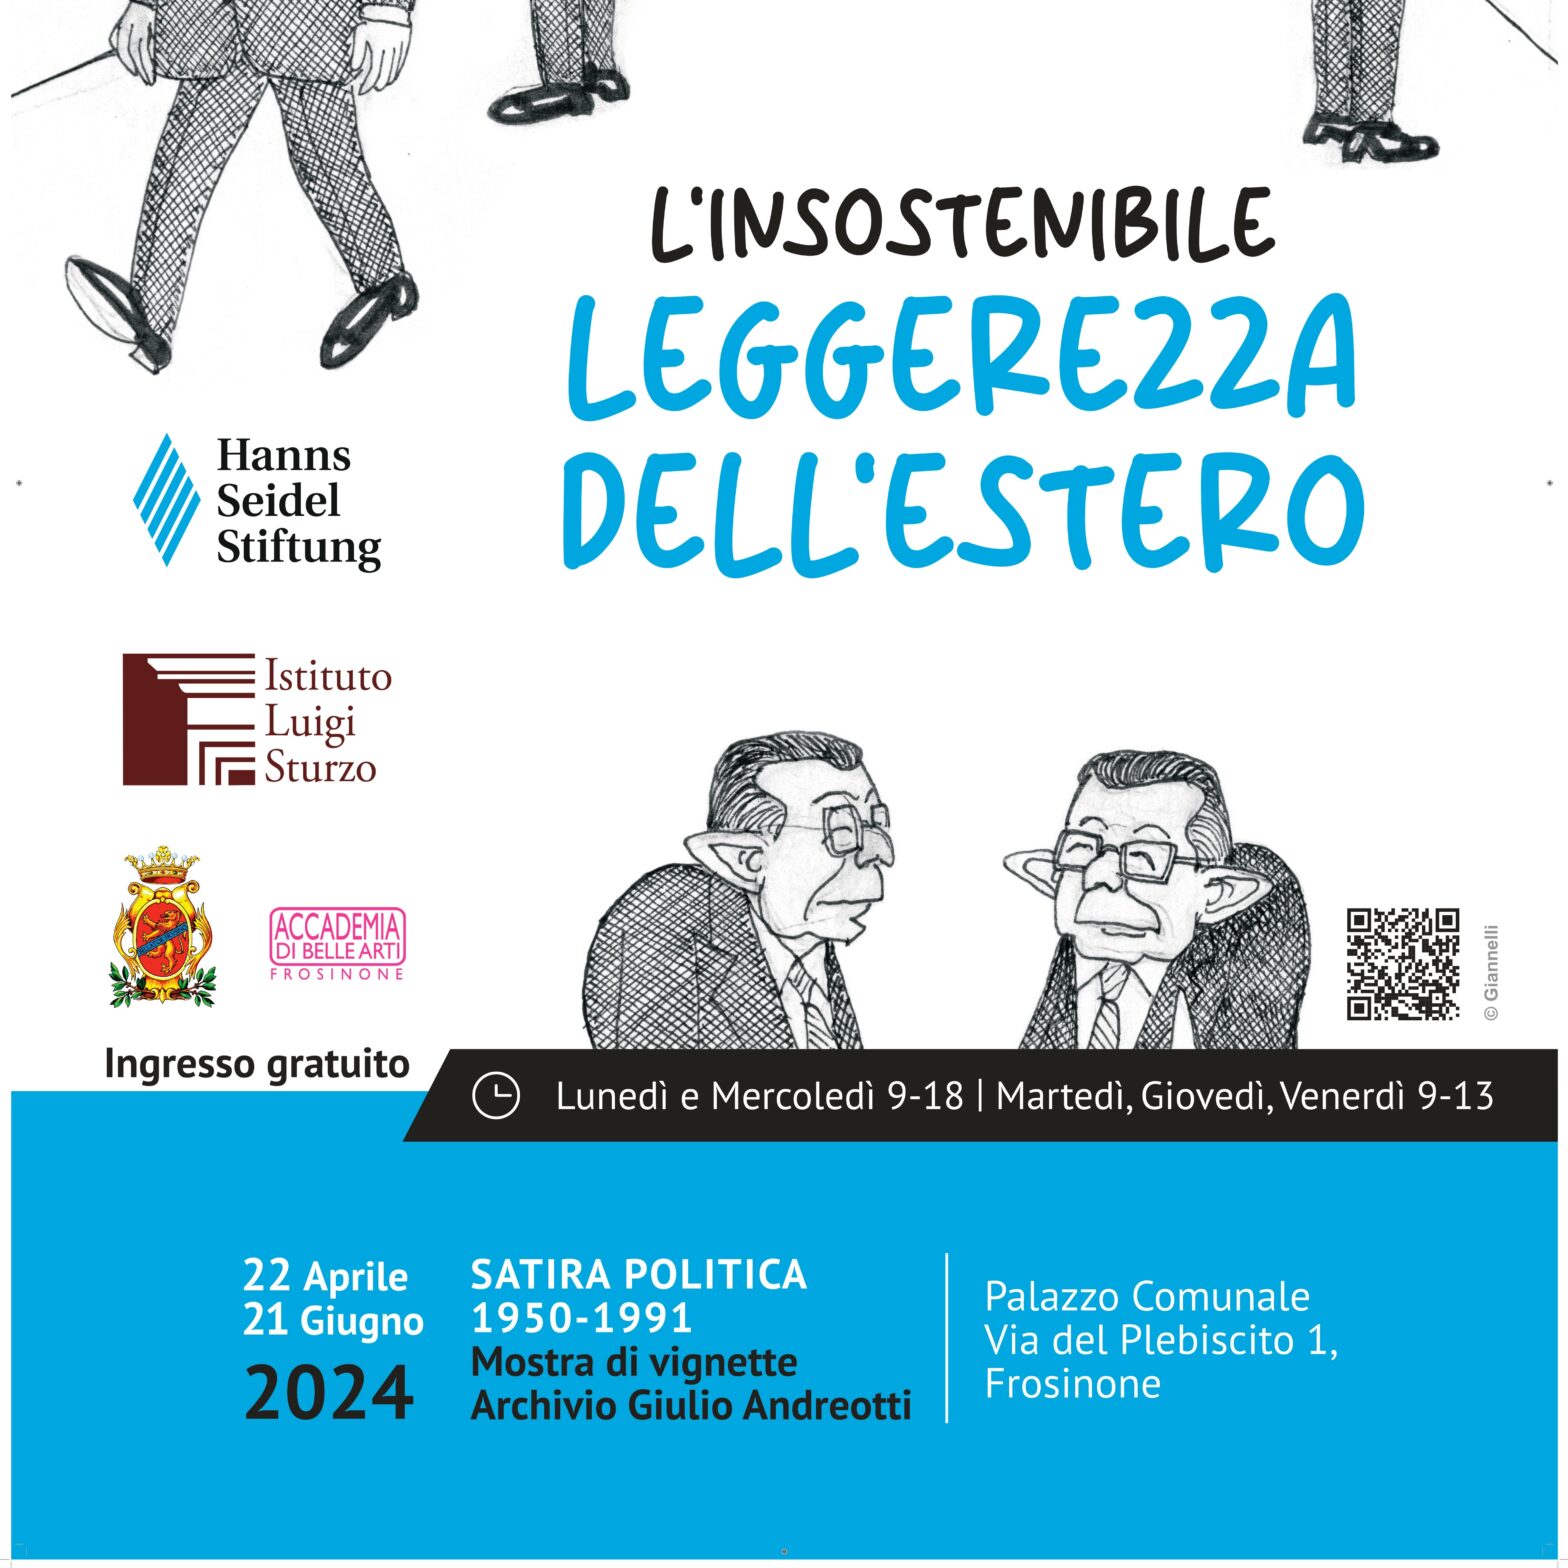 Prosegue l’itinerario della mostra sulle vignette satiriche dell’Archivio Giulio Andreotti – 22 Aprile Palazzo Comunale, Frosinone